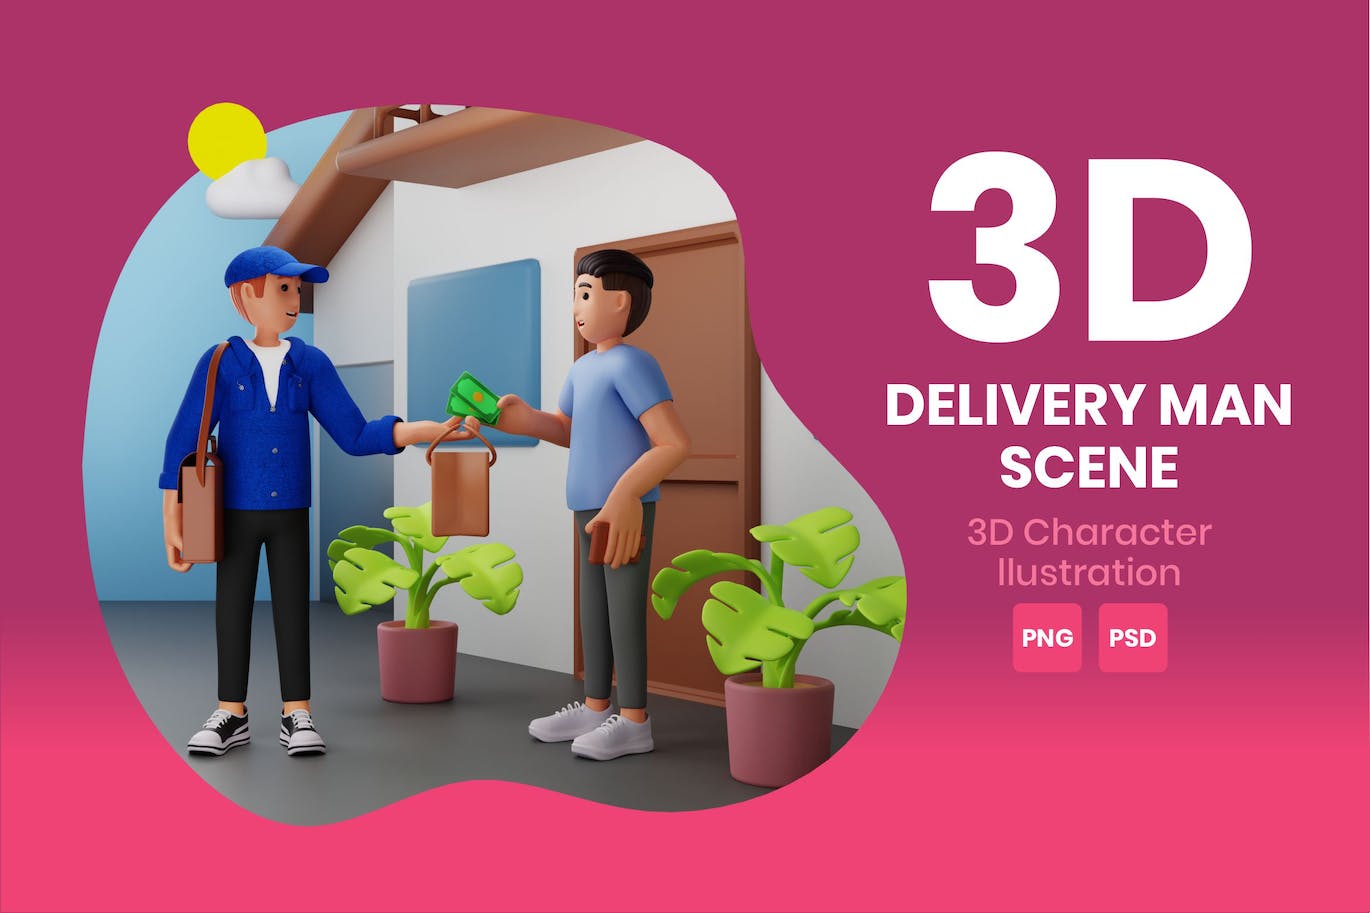 送货员场景3D角色插画素材 Delivery Man Scene 3D Character Illustration 图片素材 第1张